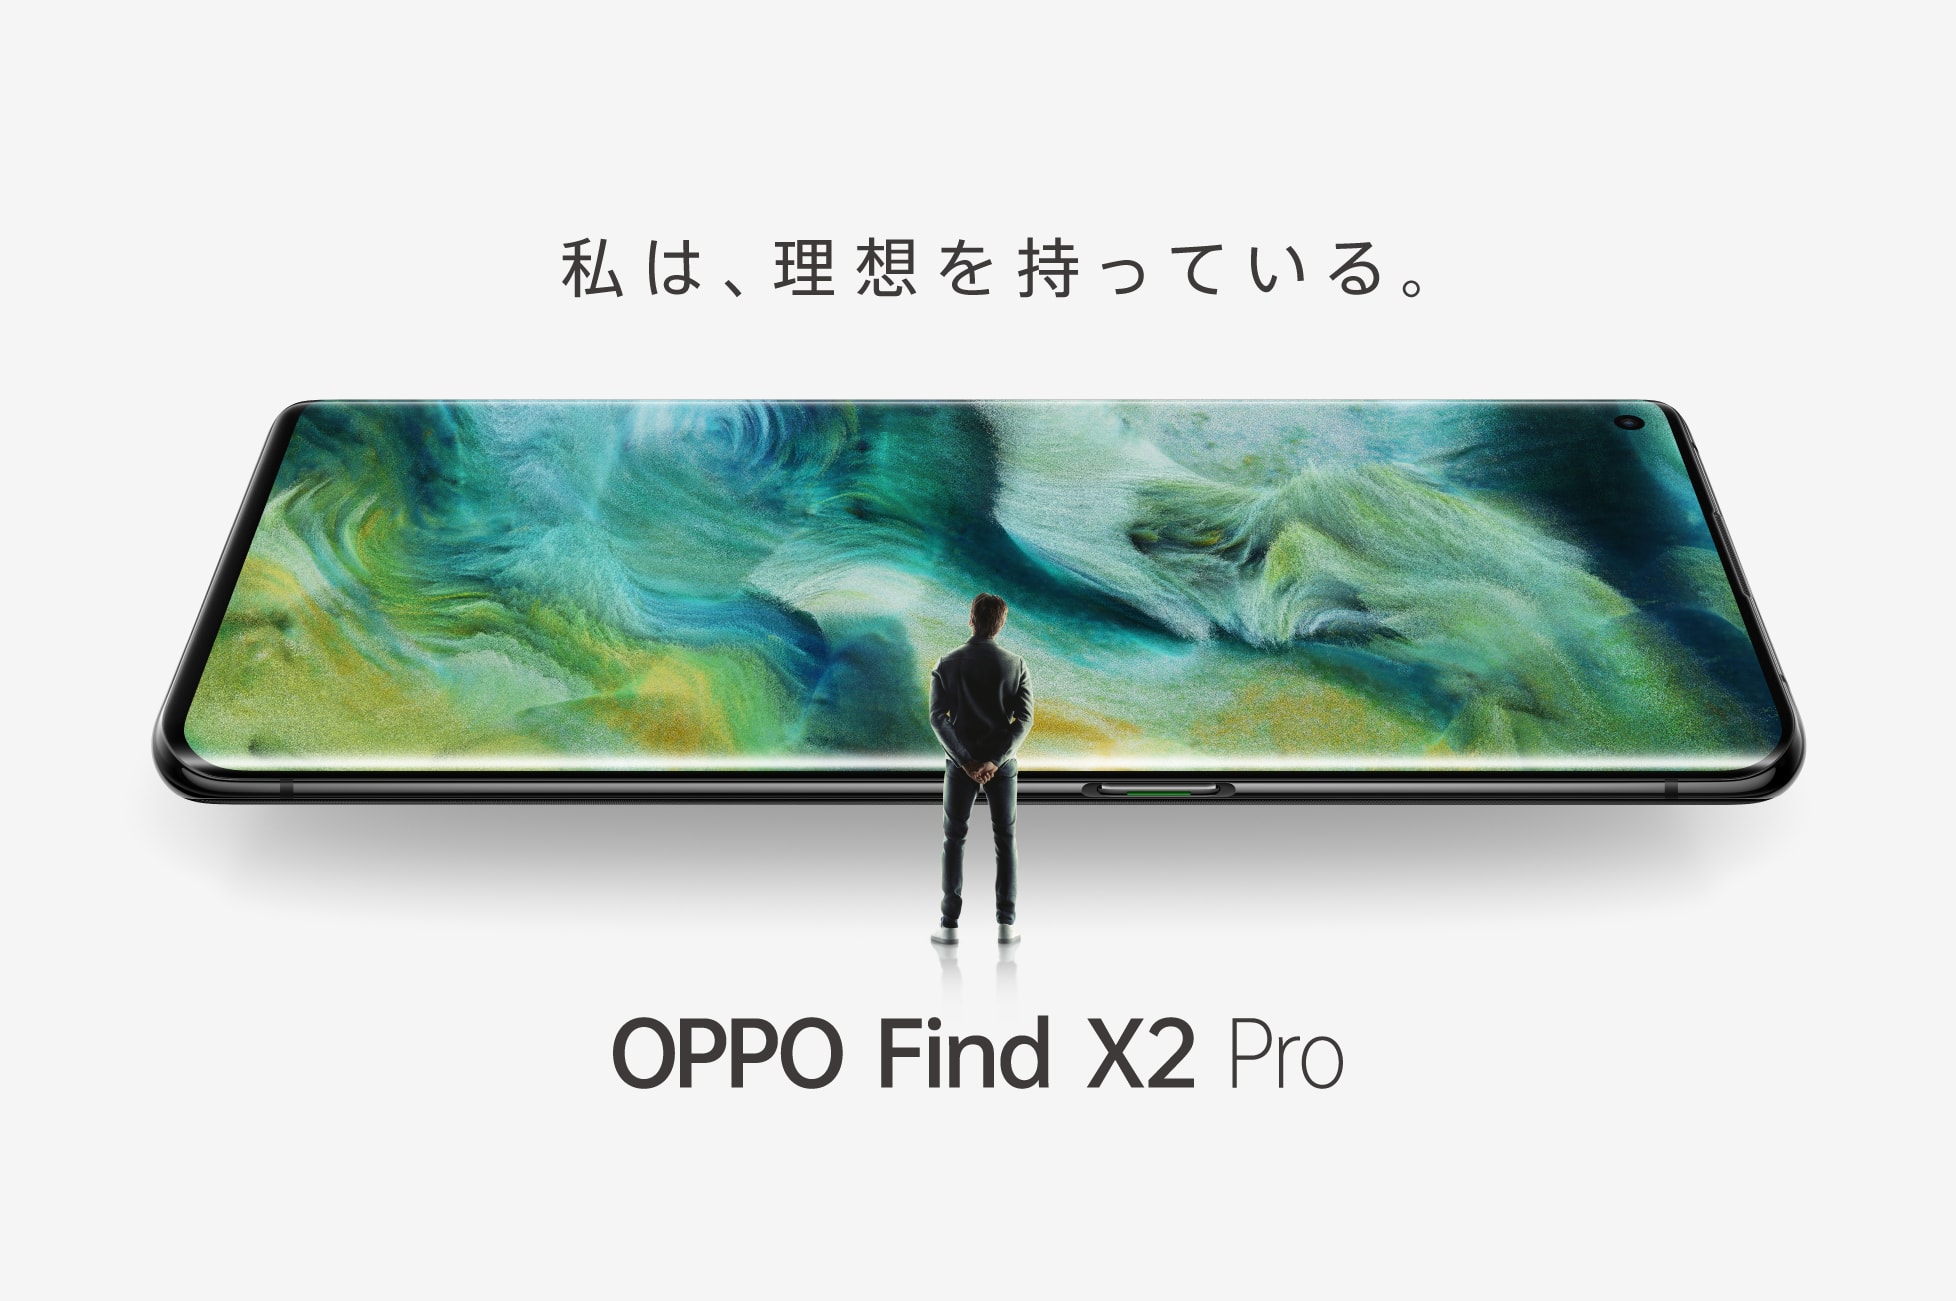 オッポジャパン 「OPPO Find X2 Pro」が KDDI株式会社、沖縄セルラー電話株式会社の 独占モデルとして取り扱い開始